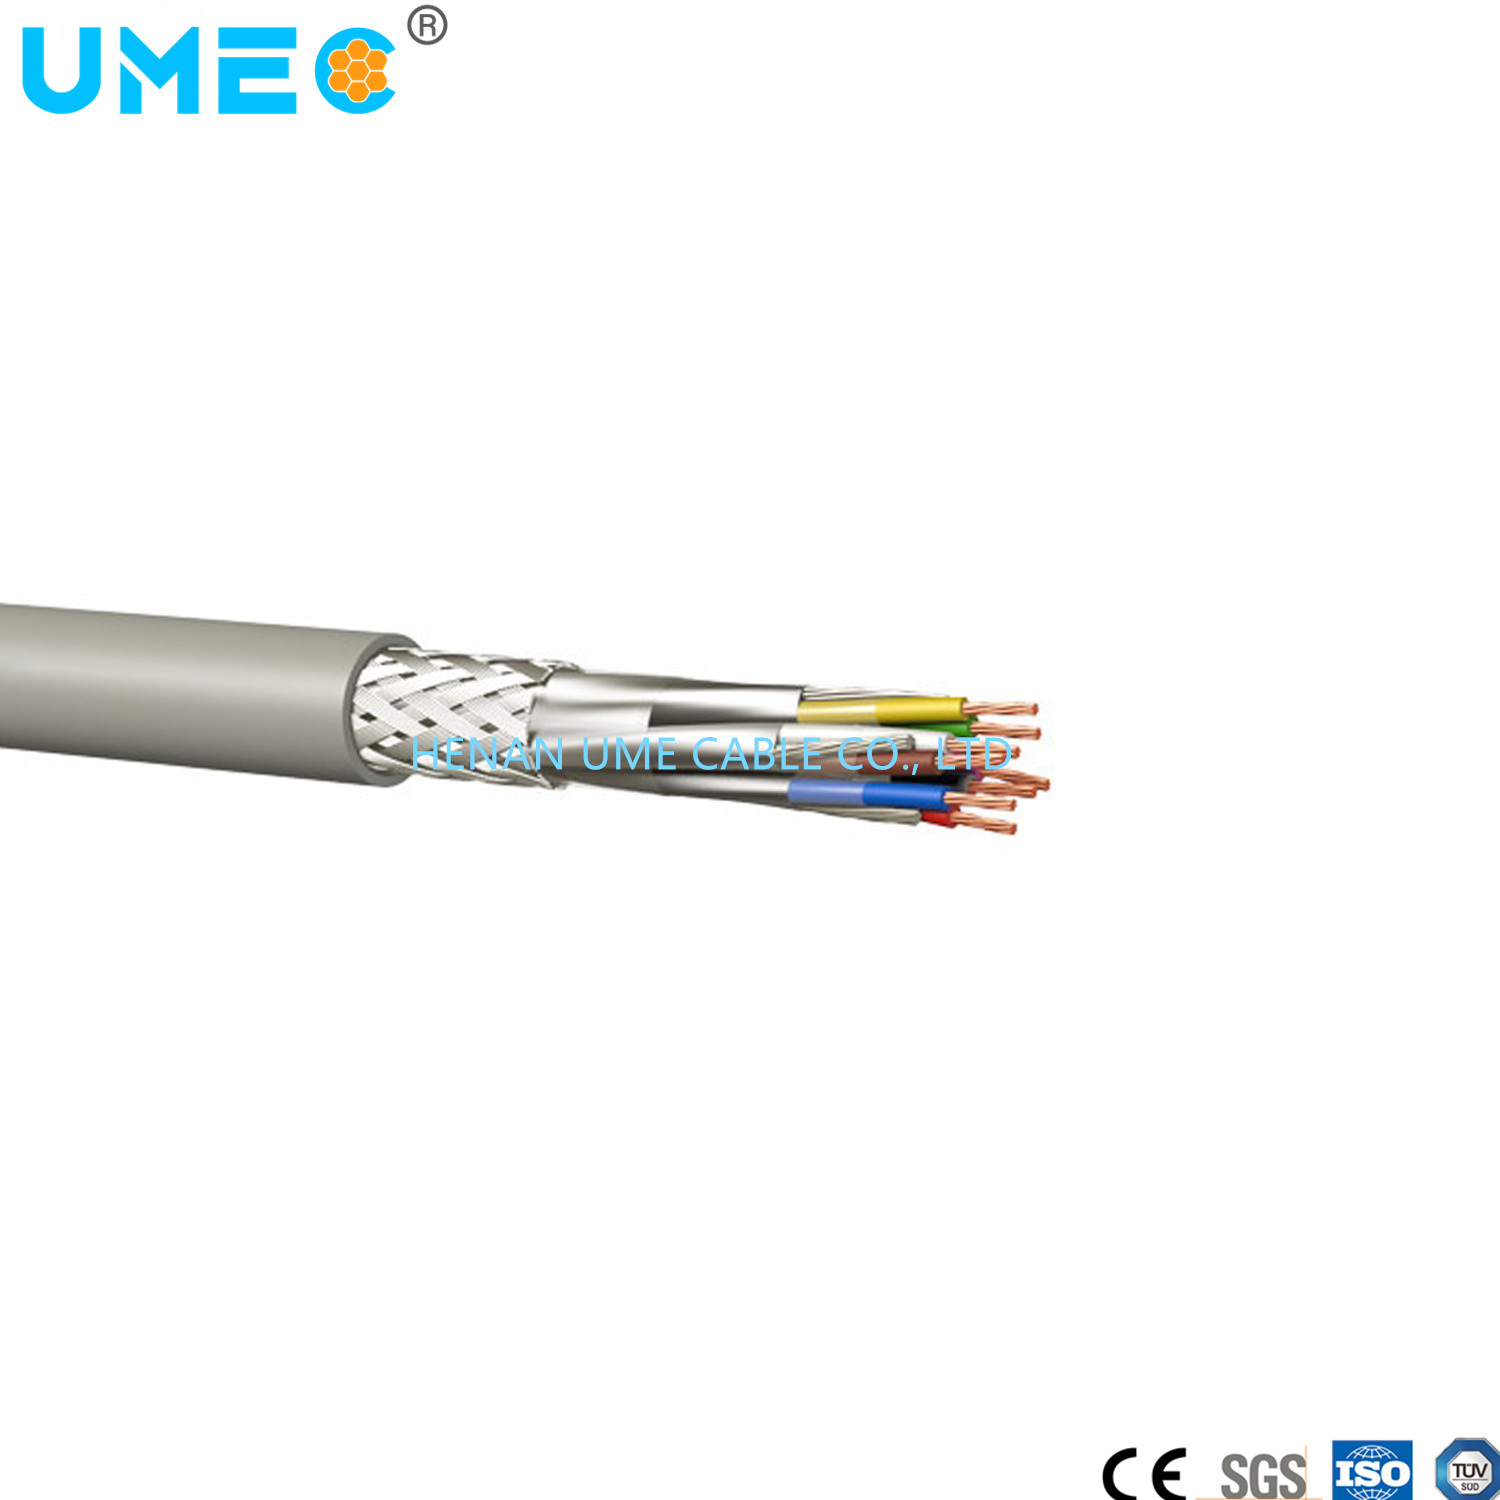 
                Cable de par trenzado contra interferencias electromagnéticas Li2Cable ycy
            